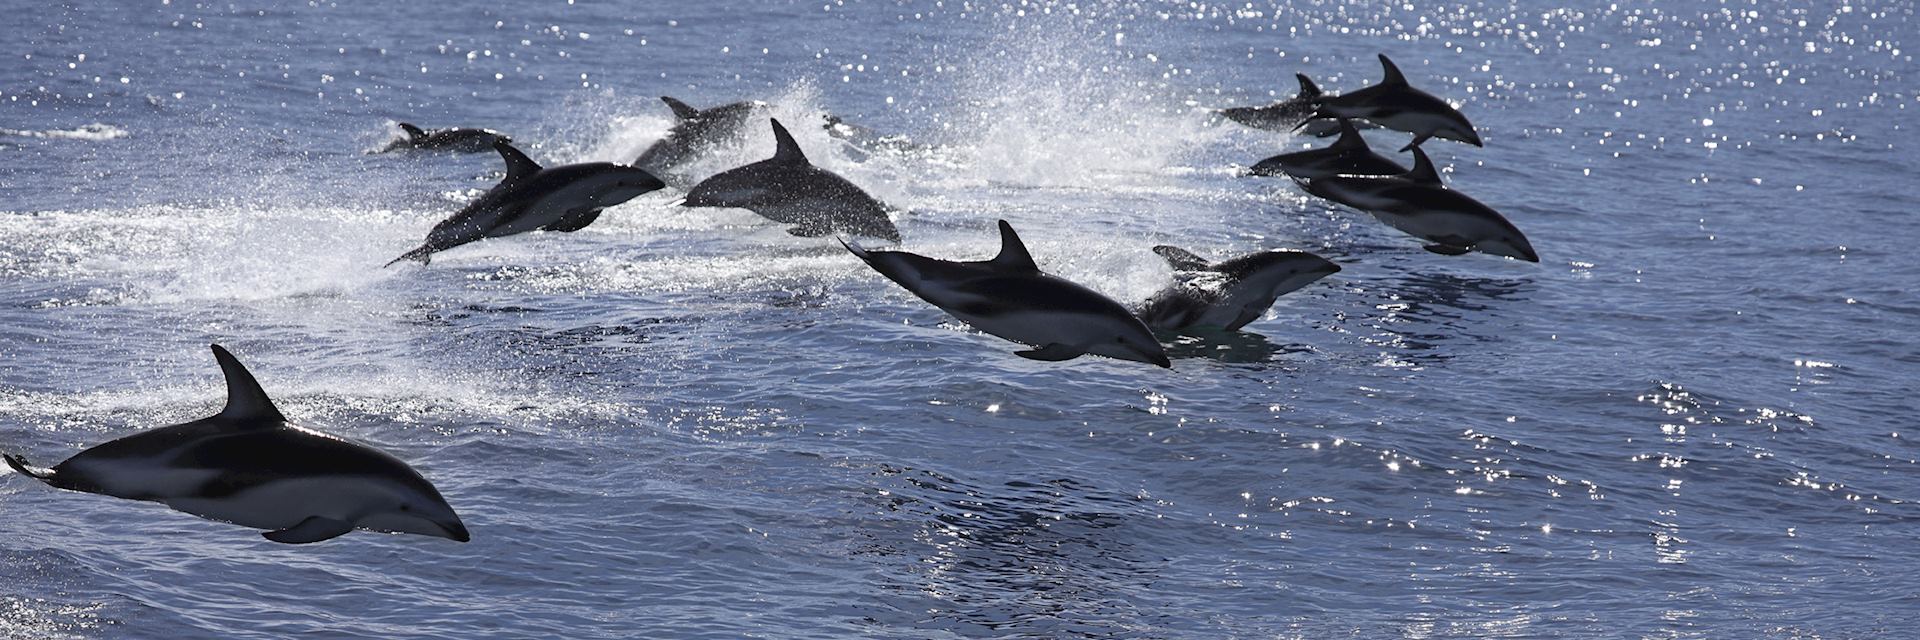 Dusky dolphin pod, Kaikoura